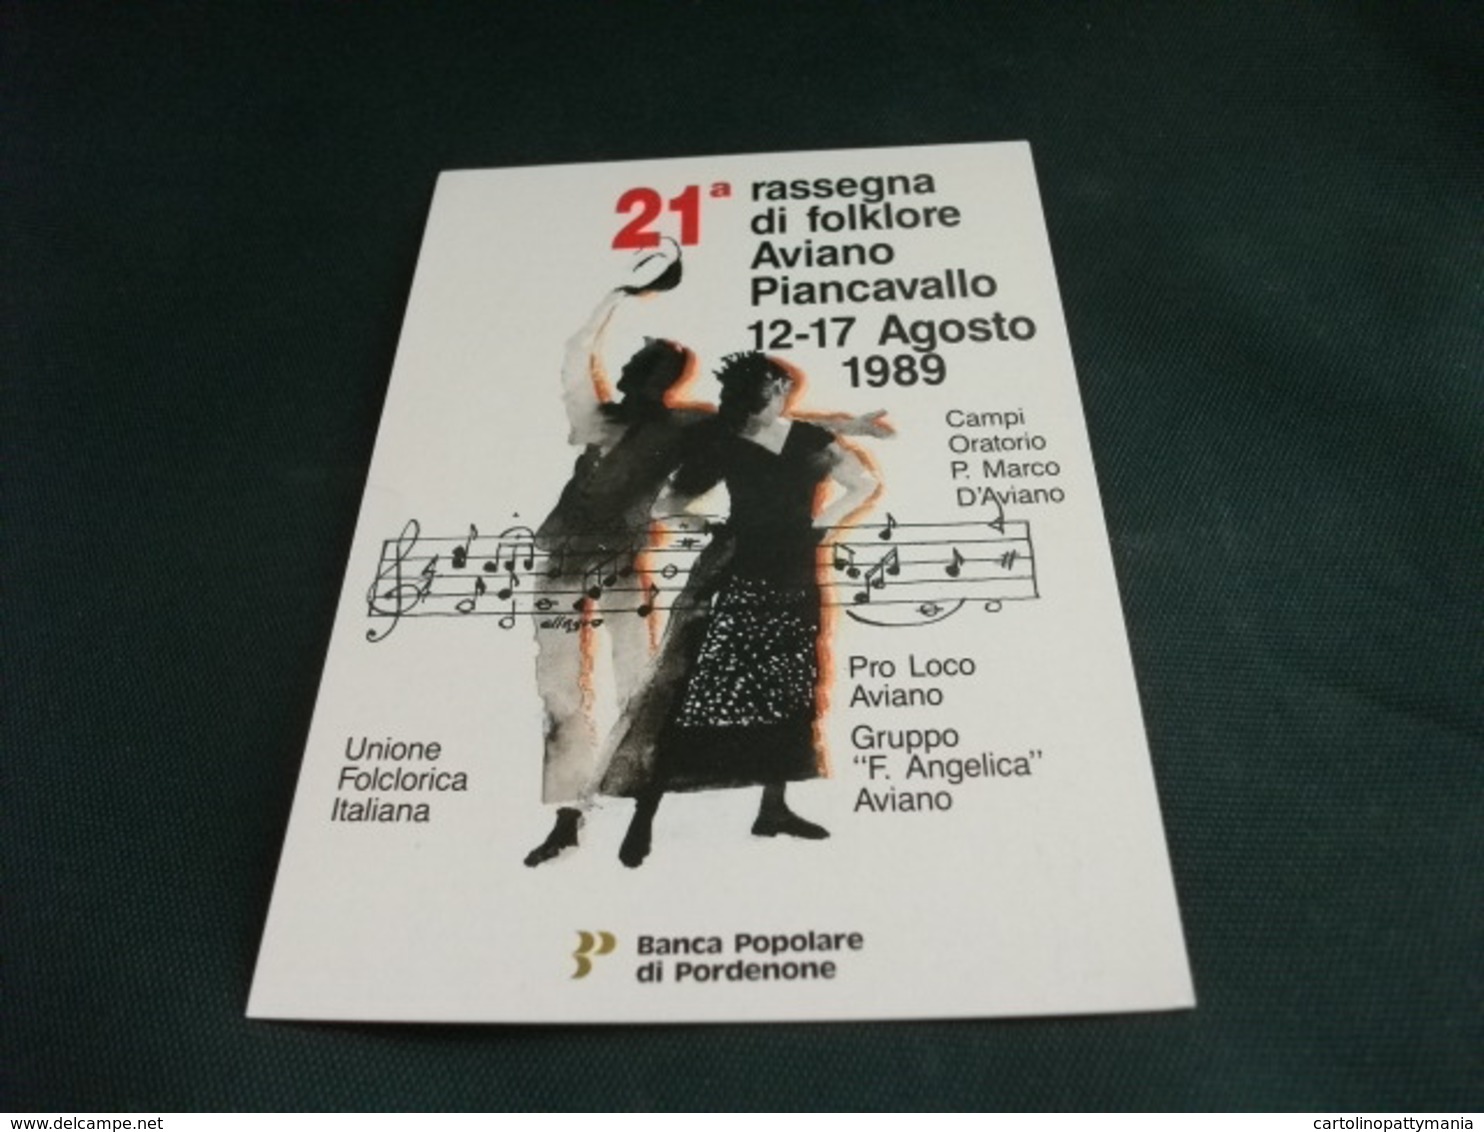 COSTUME COSTUMI 21° RASSEGNA FOLKLORE AVIANO PIANCAVALLO 1989 SPARTITO MUSICALE GRUPPO F. ANGELICA - Danze